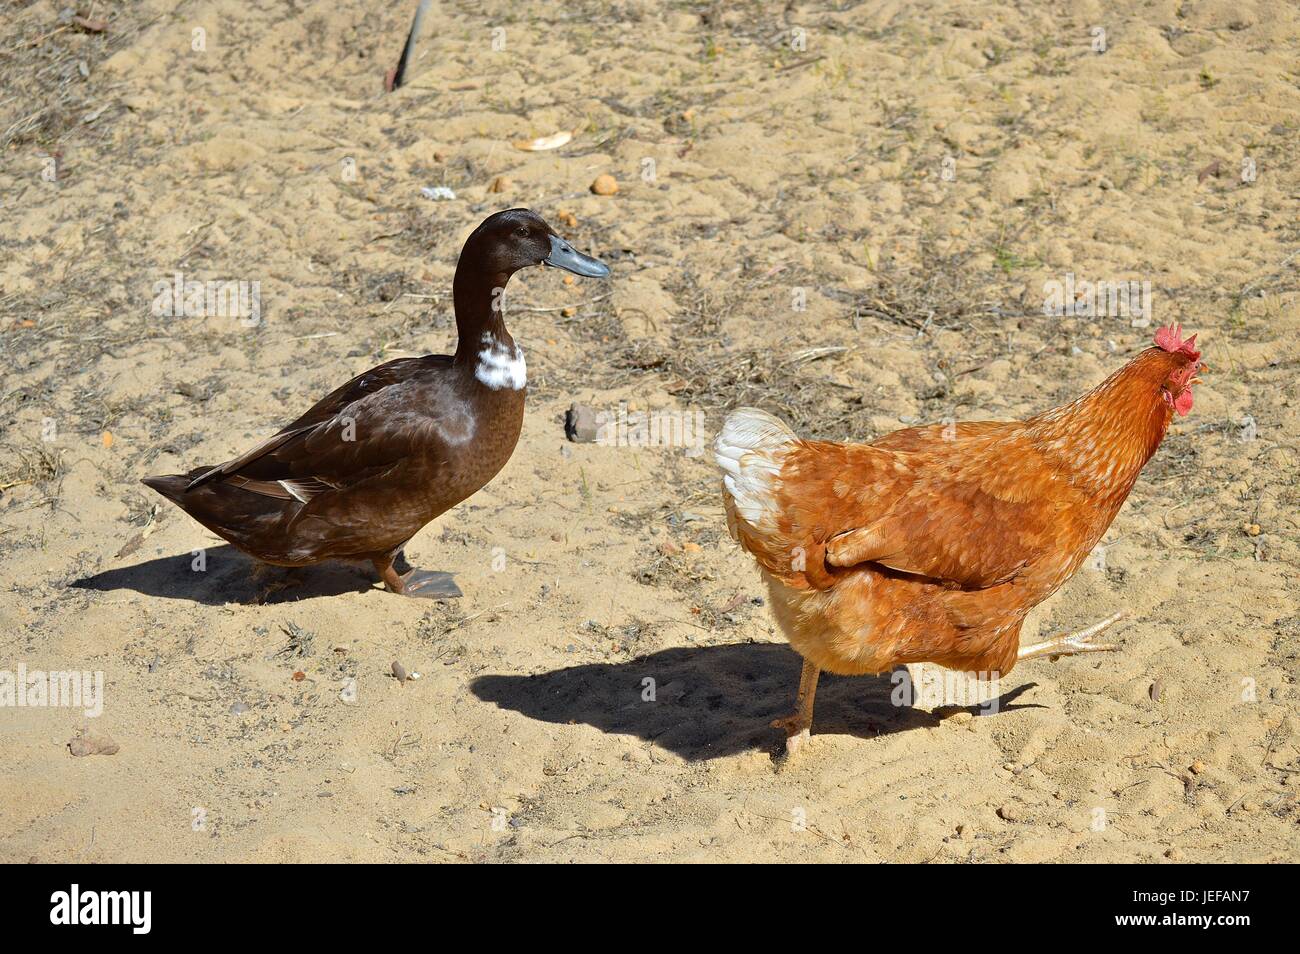 Canard marron et orange chicken passé en courant Banque D'Images